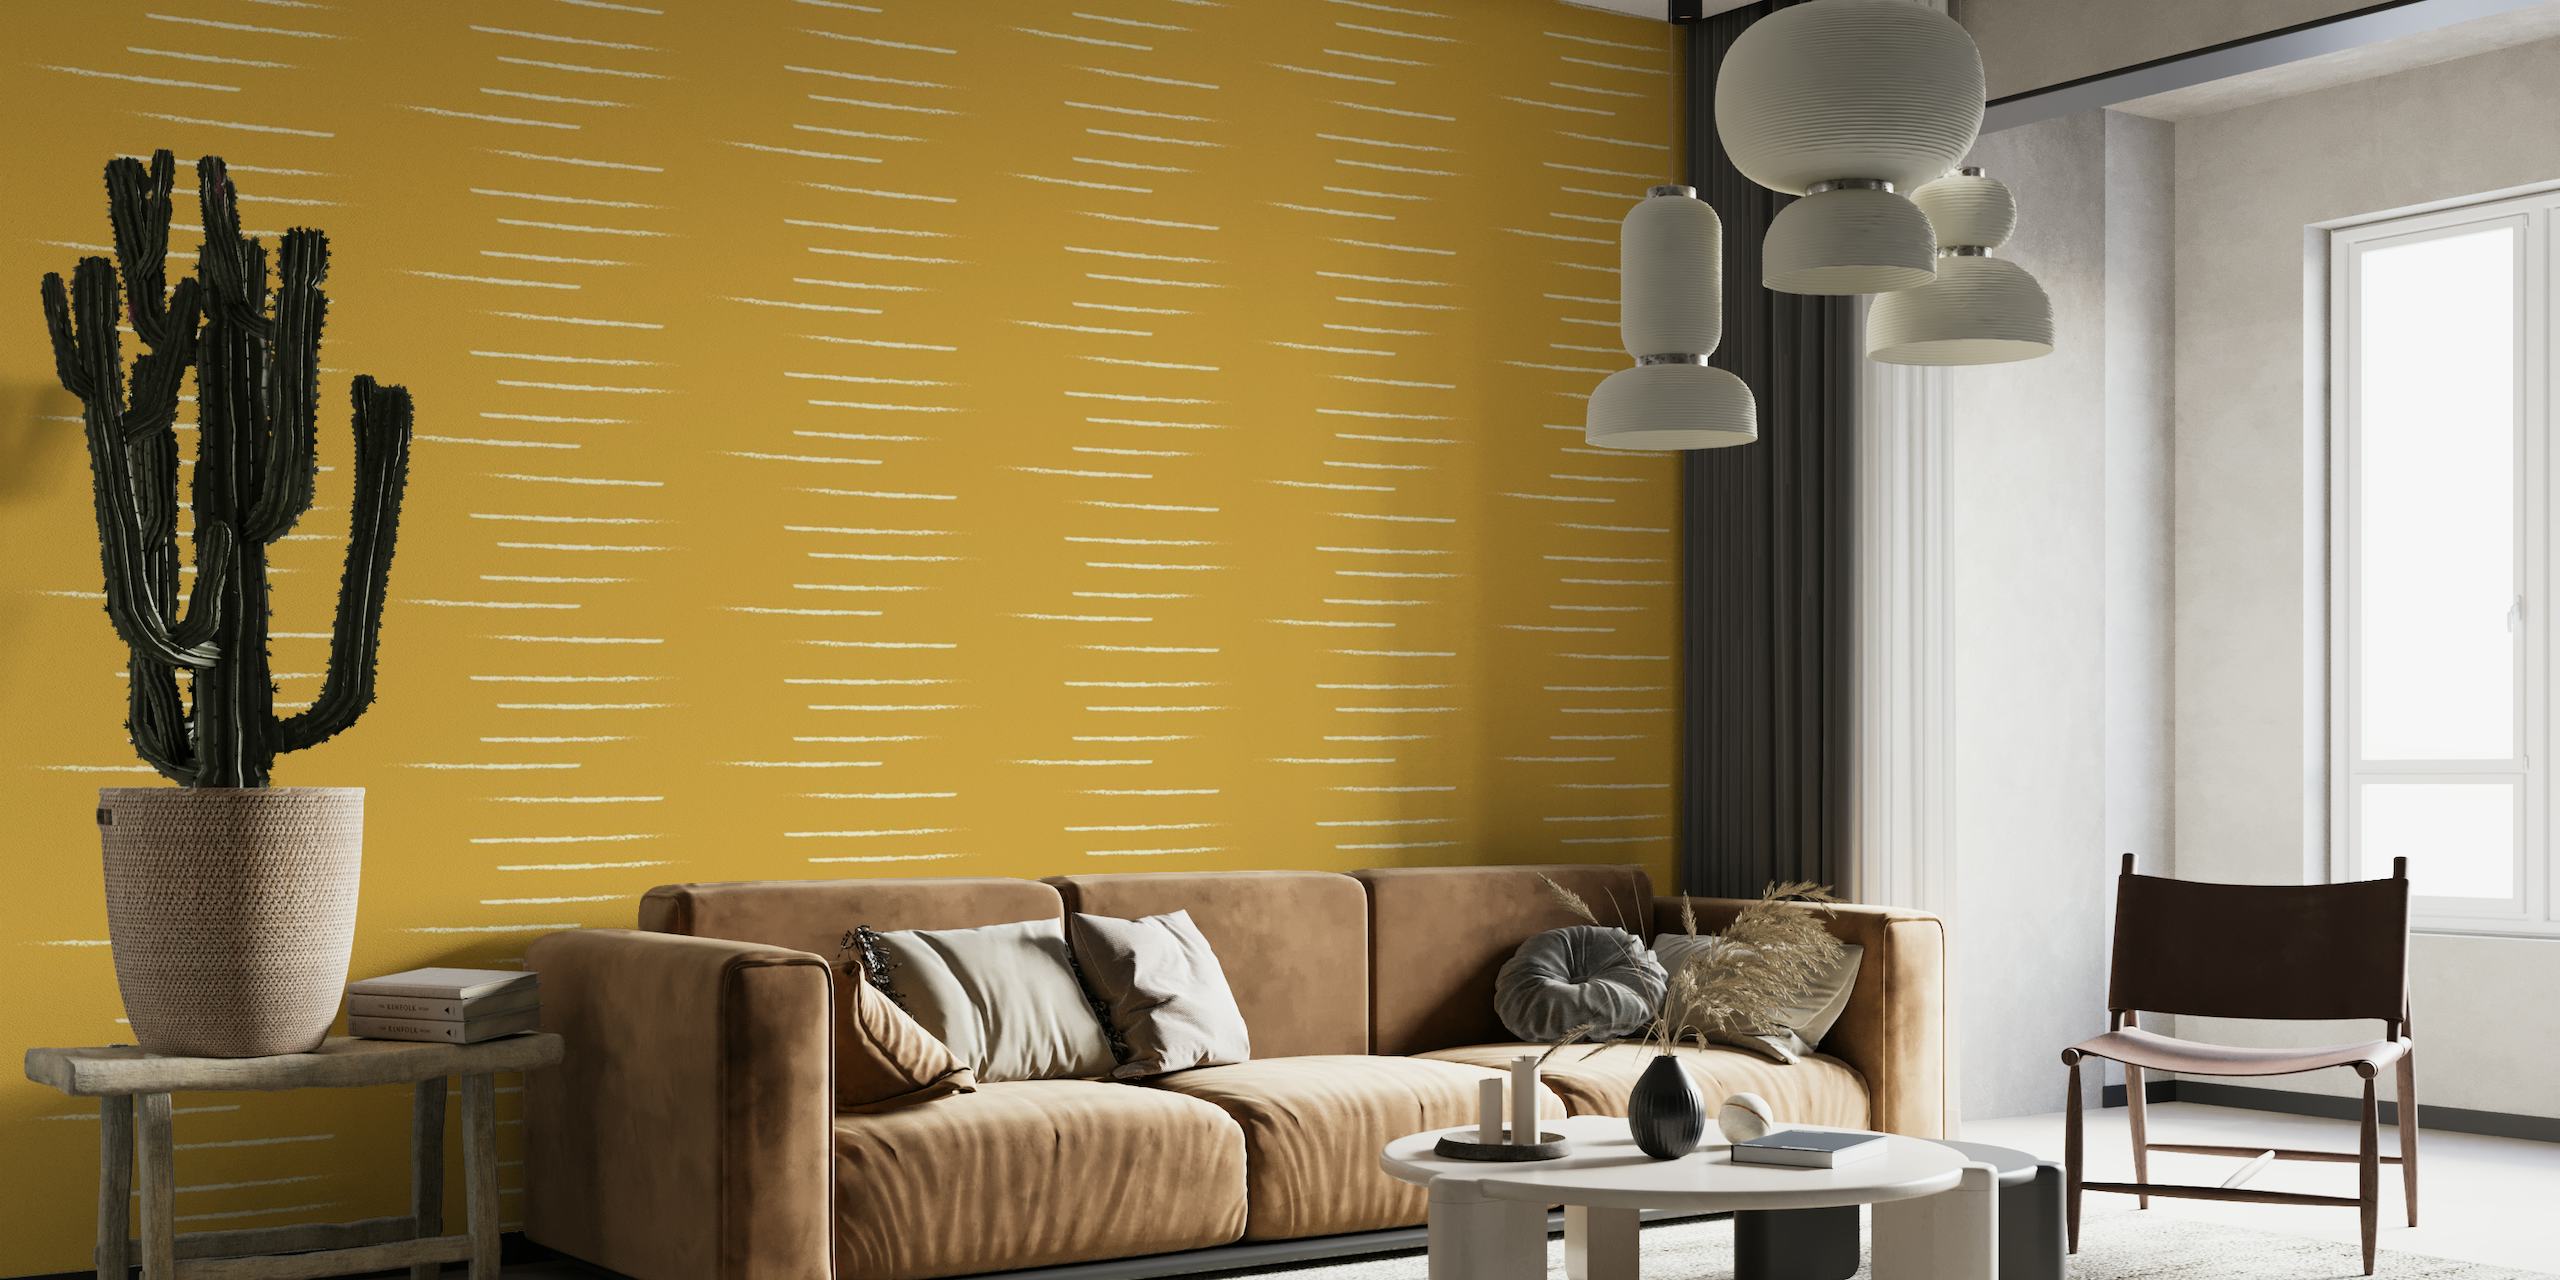 Mural de parede listrado horizontal em tons de bege mostarda refletindo um estilo aconchegante e minimalista